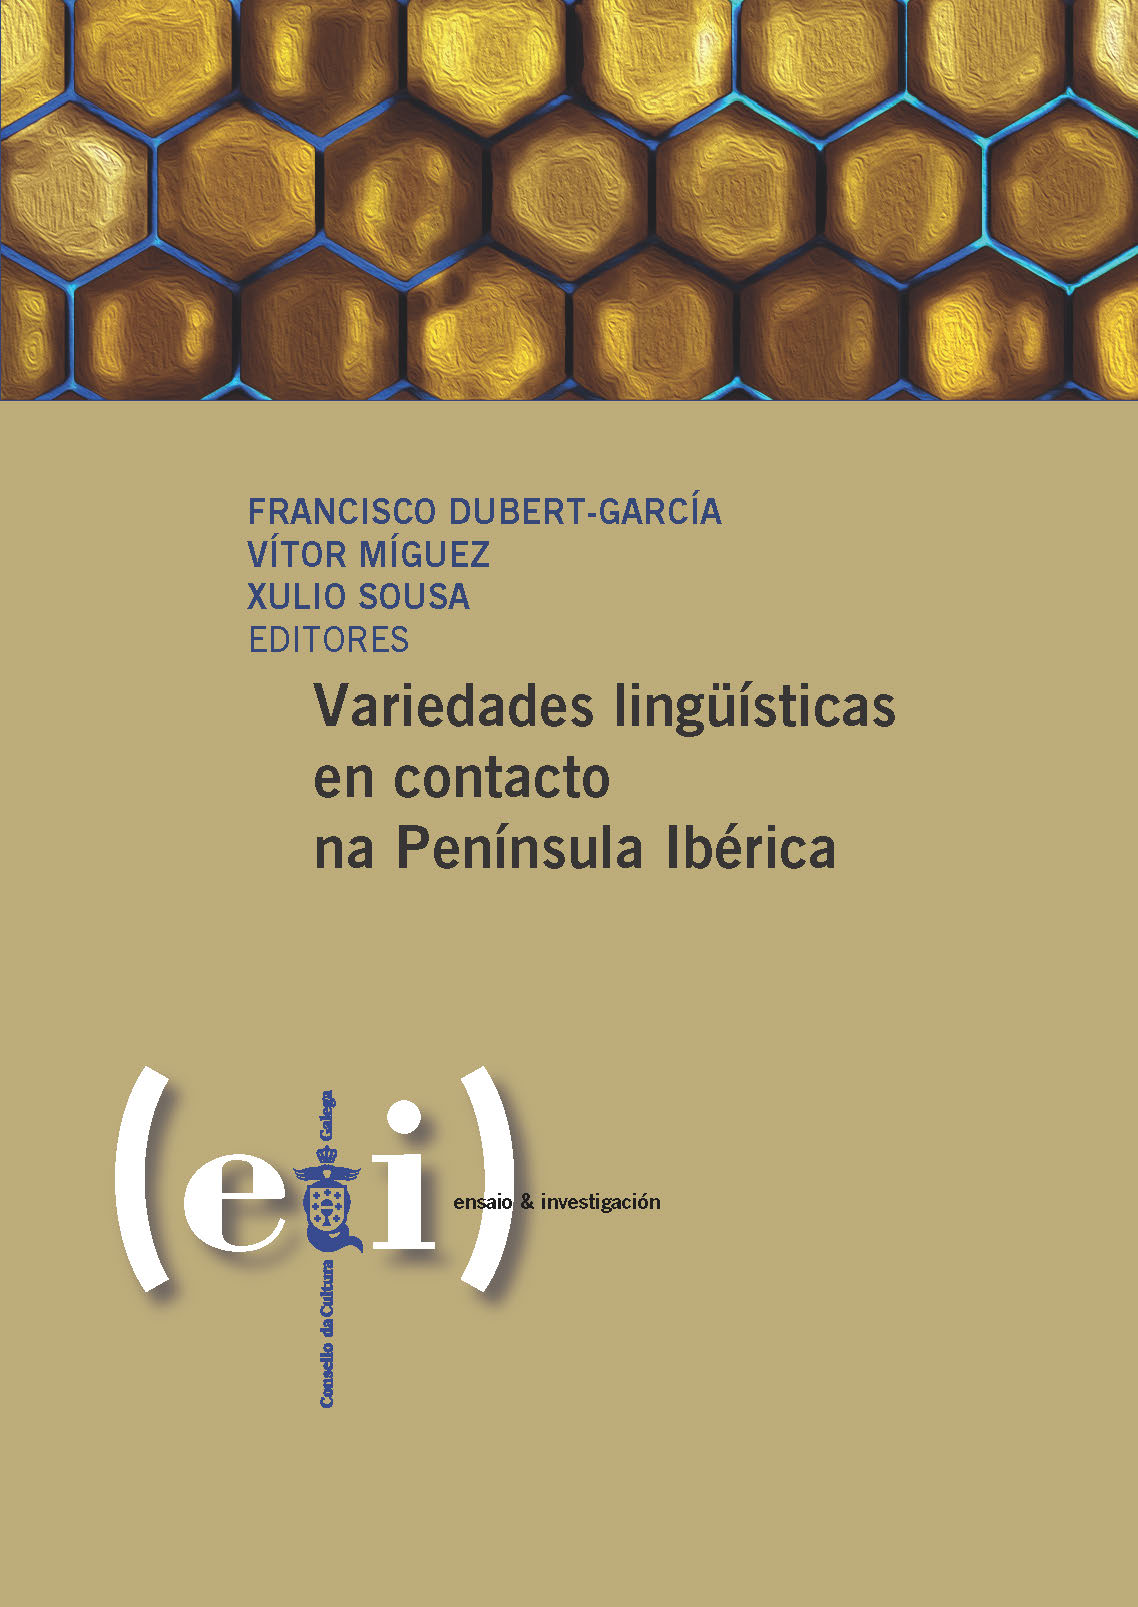 Imagen de portada del libro Variedades lingüísticas en contacto na Península Ibérica